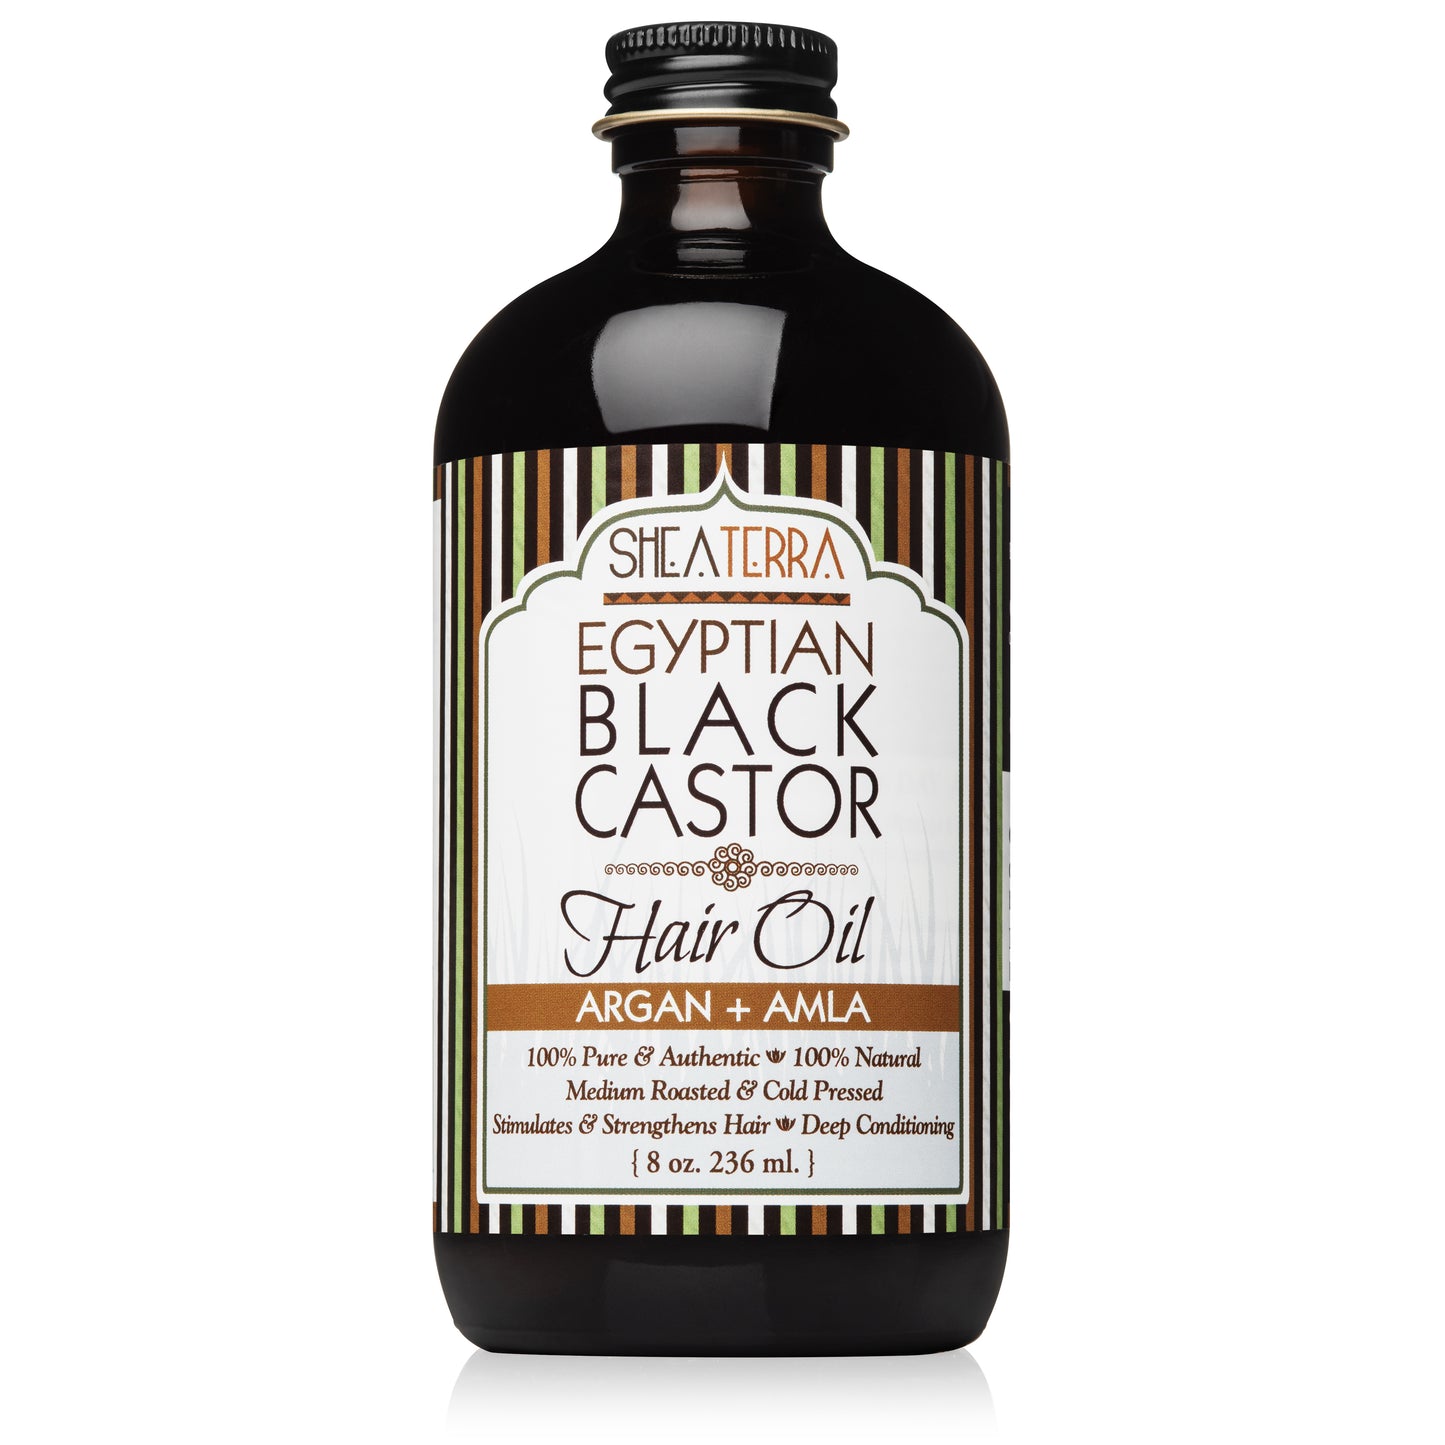 Egyptian Black Castor Oil